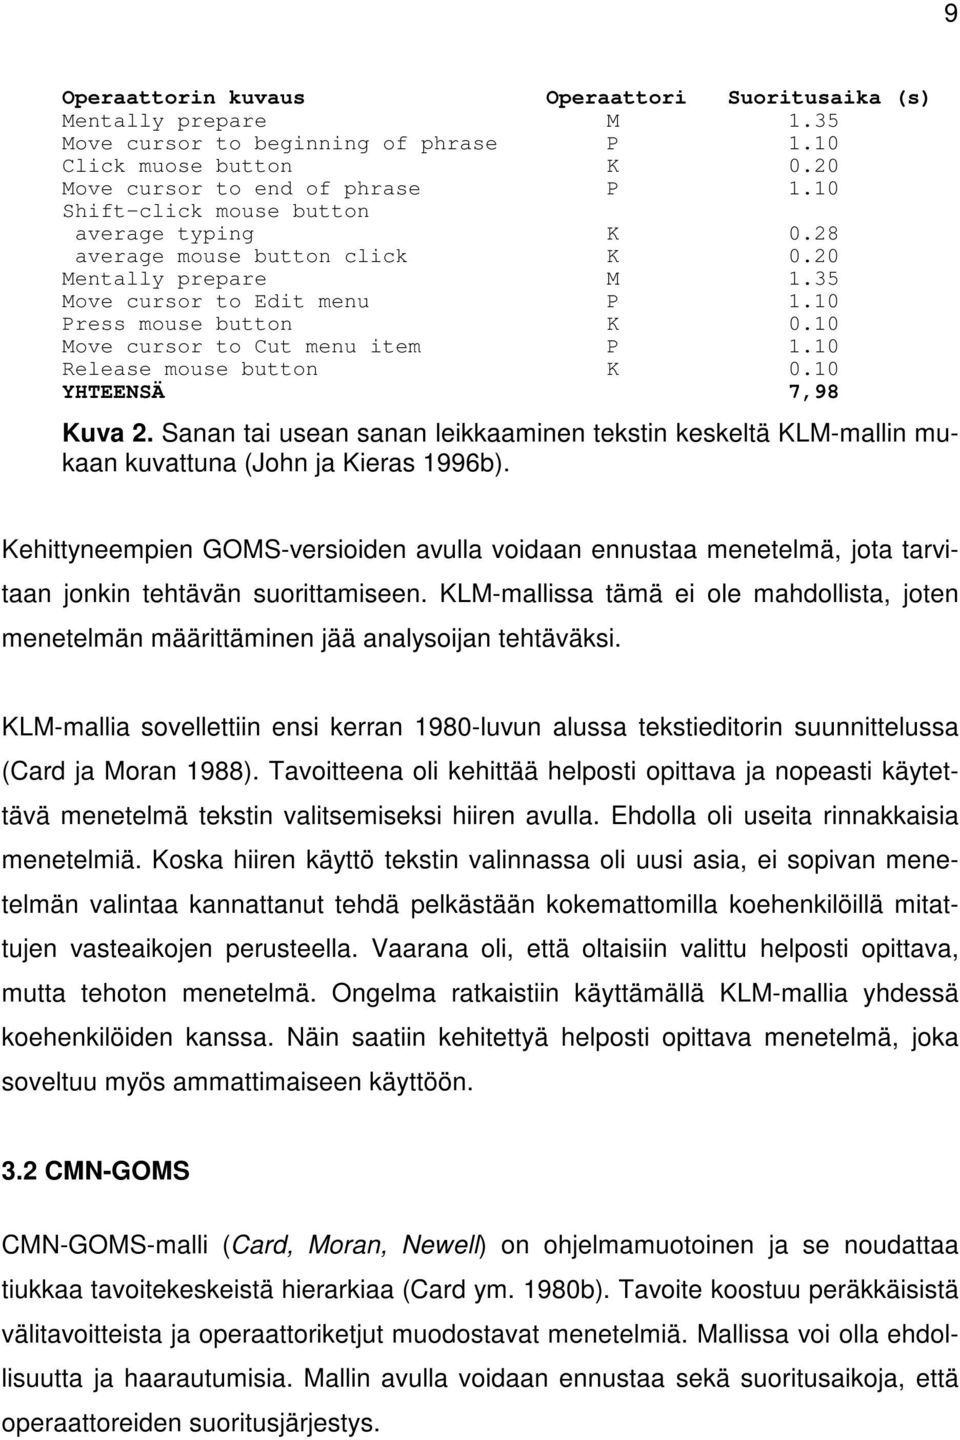 10 Release mouse button K 0.10 YHTEENSÄ 7,98 Kuva 2. Sanan tai usean sanan leikkaaminen tekstin keskeltä KLM-mallin mukaan kuvattuna (John ja Kieras 1996b).